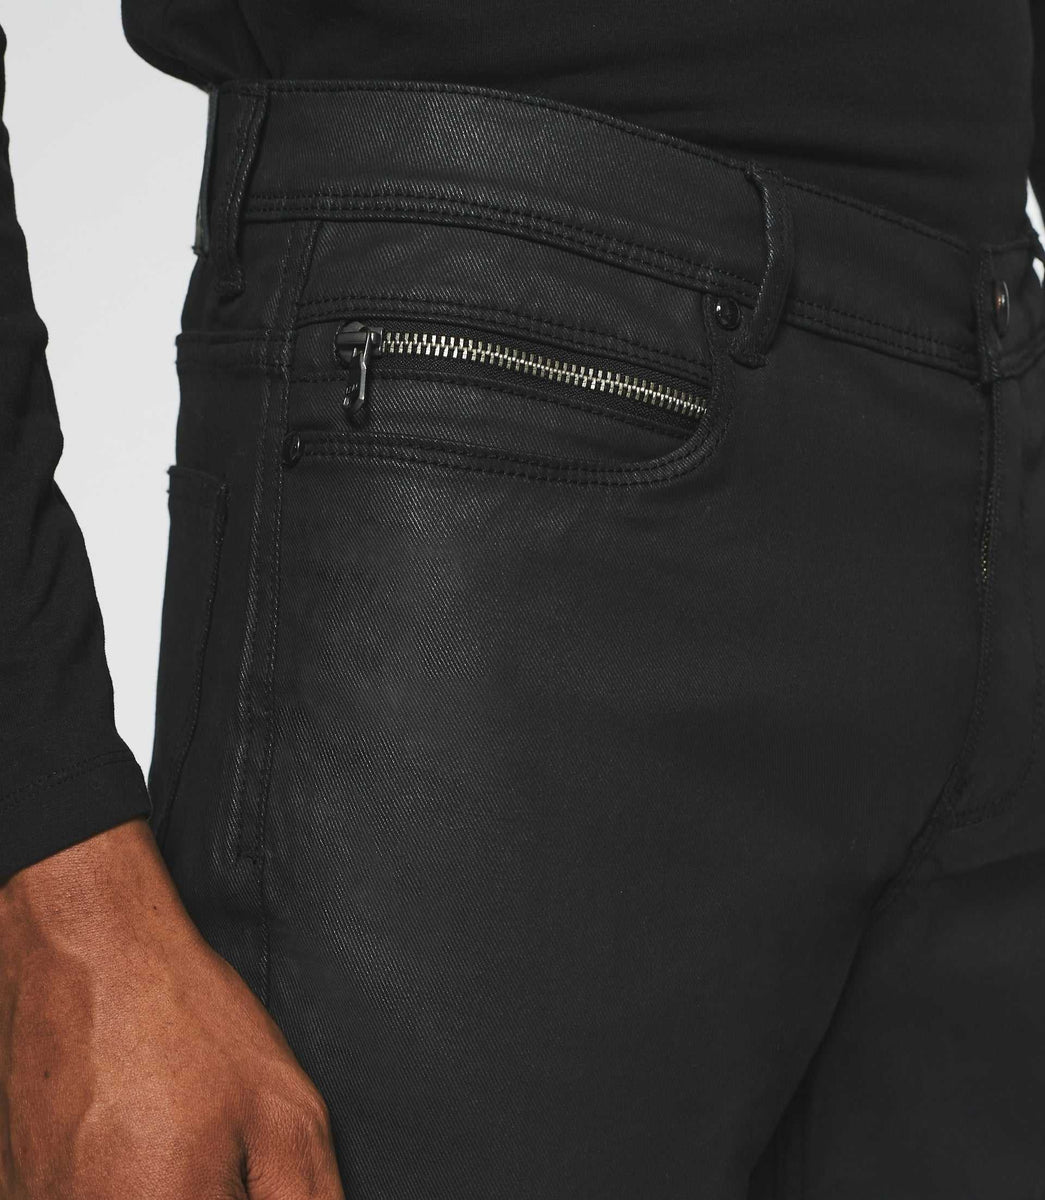 JEANS DEVRED REGULAR huilé noir taille US 30 pantalon homme EUR 6,00 -  PicClick FR